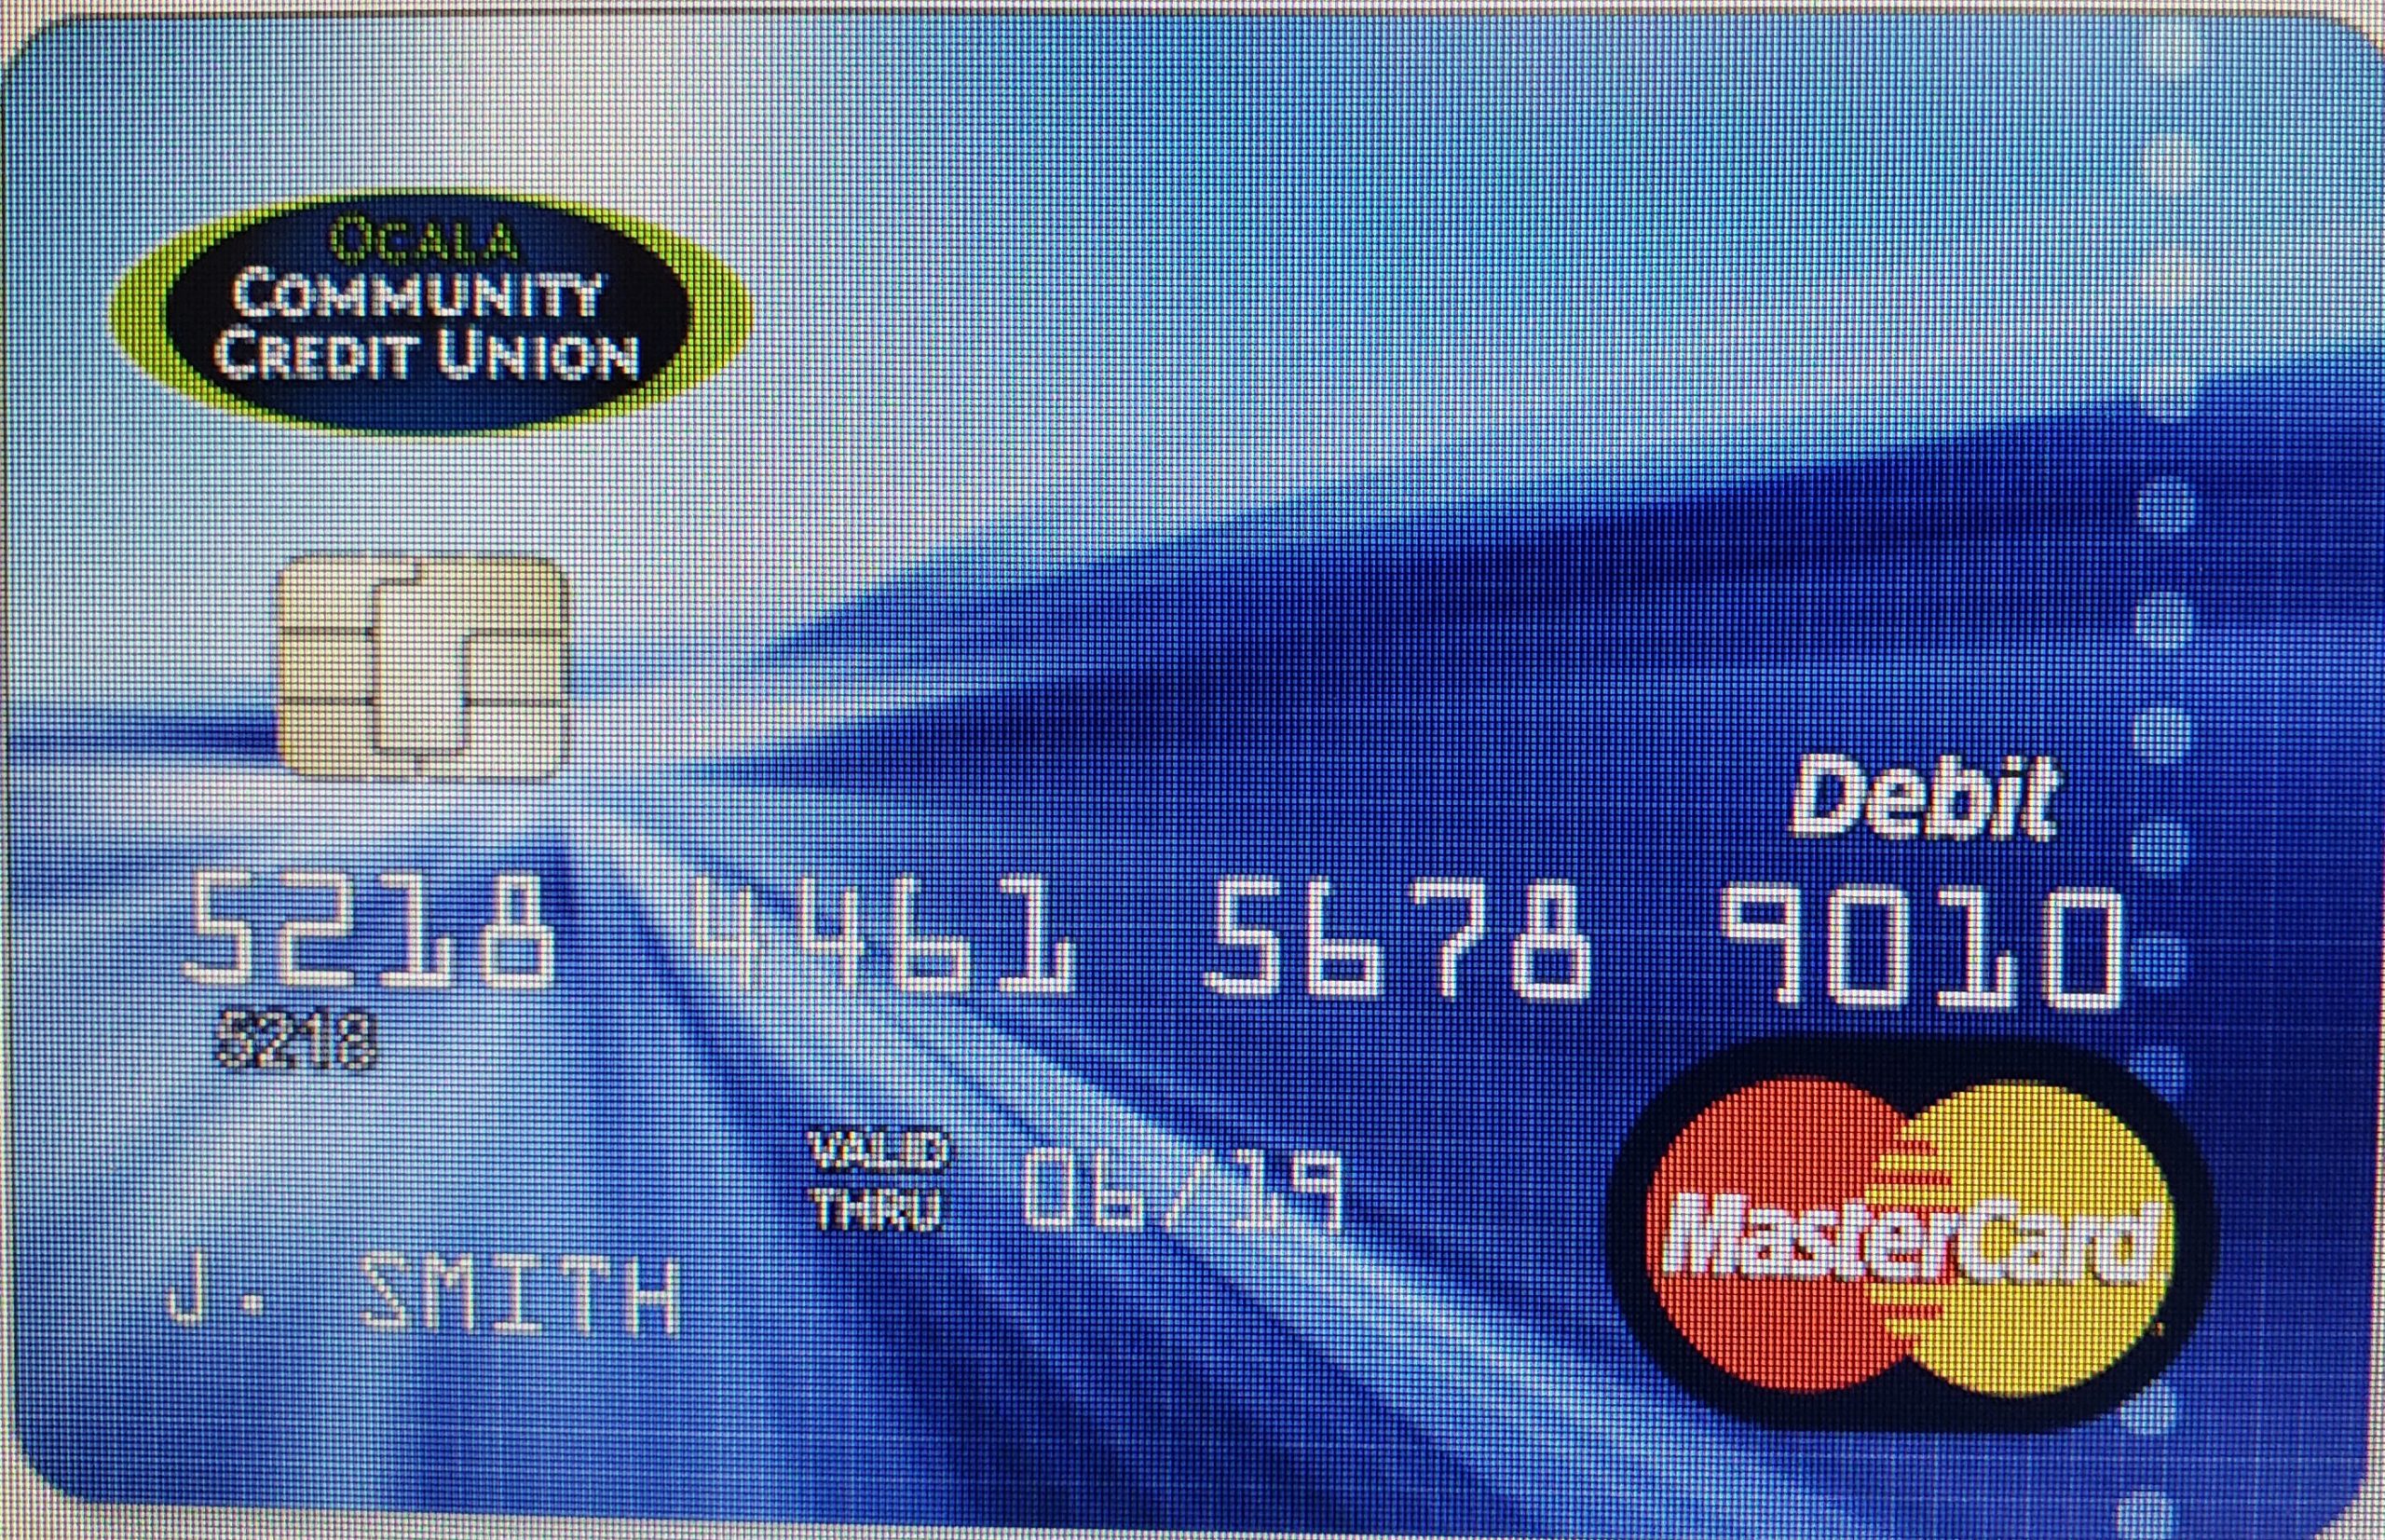 01-28-2020 MC Debit Card from Website